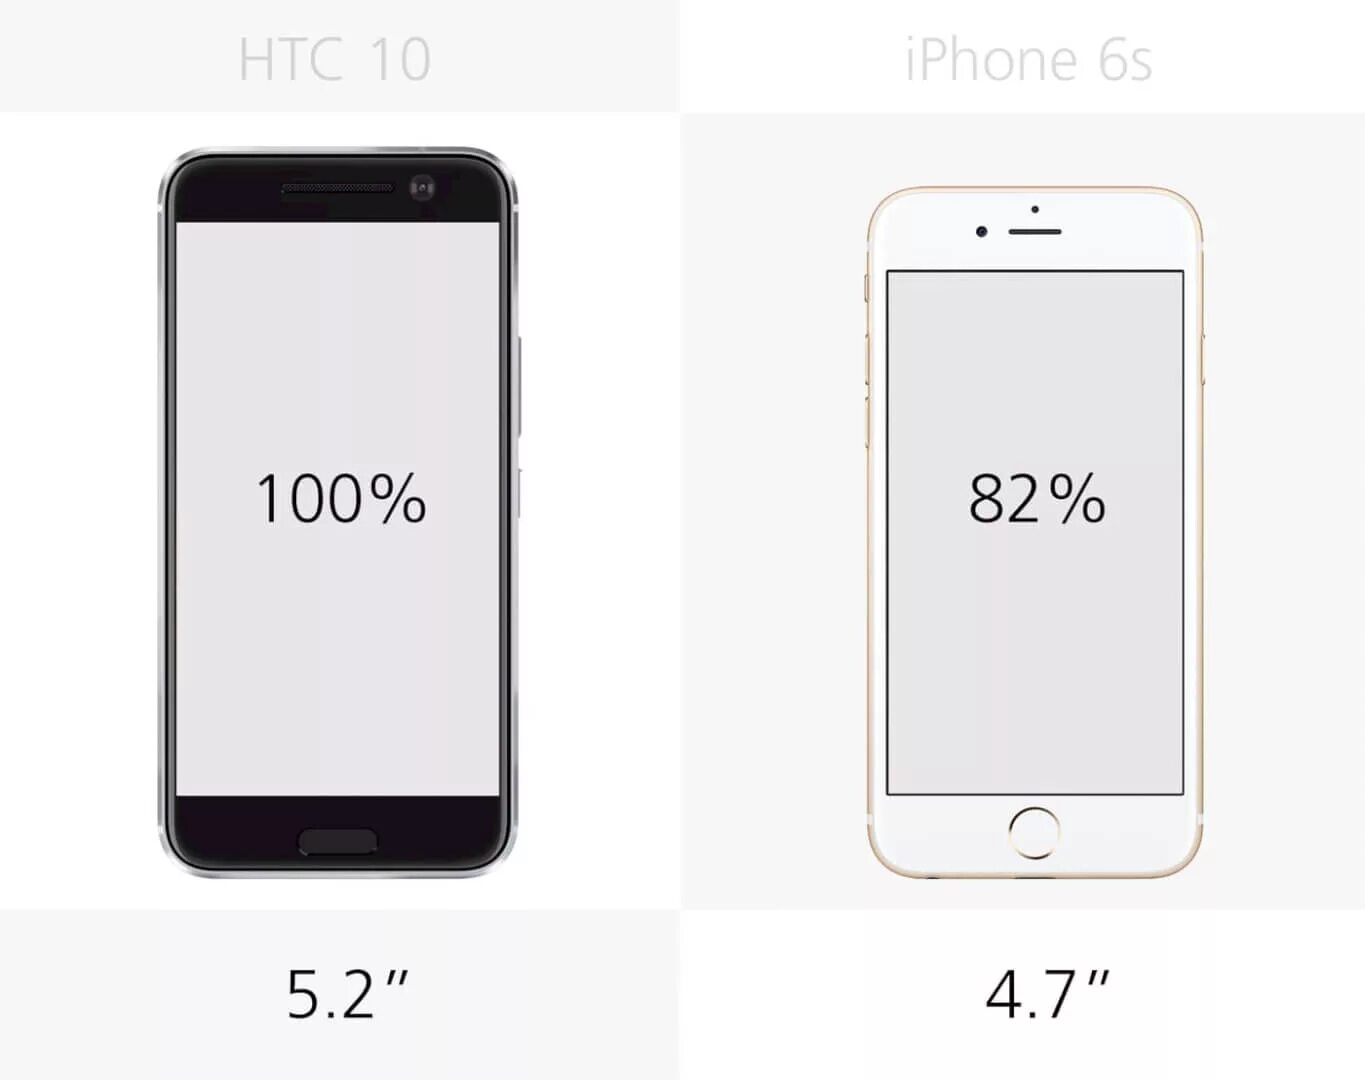 7 дюймов в сантиметрах. Айфон 6s диагональ экрана. Айфон 6 диагональ экрана. Айфон 6s дюймы. Айфон 5s диагональ экрана 4.7 дюймов.